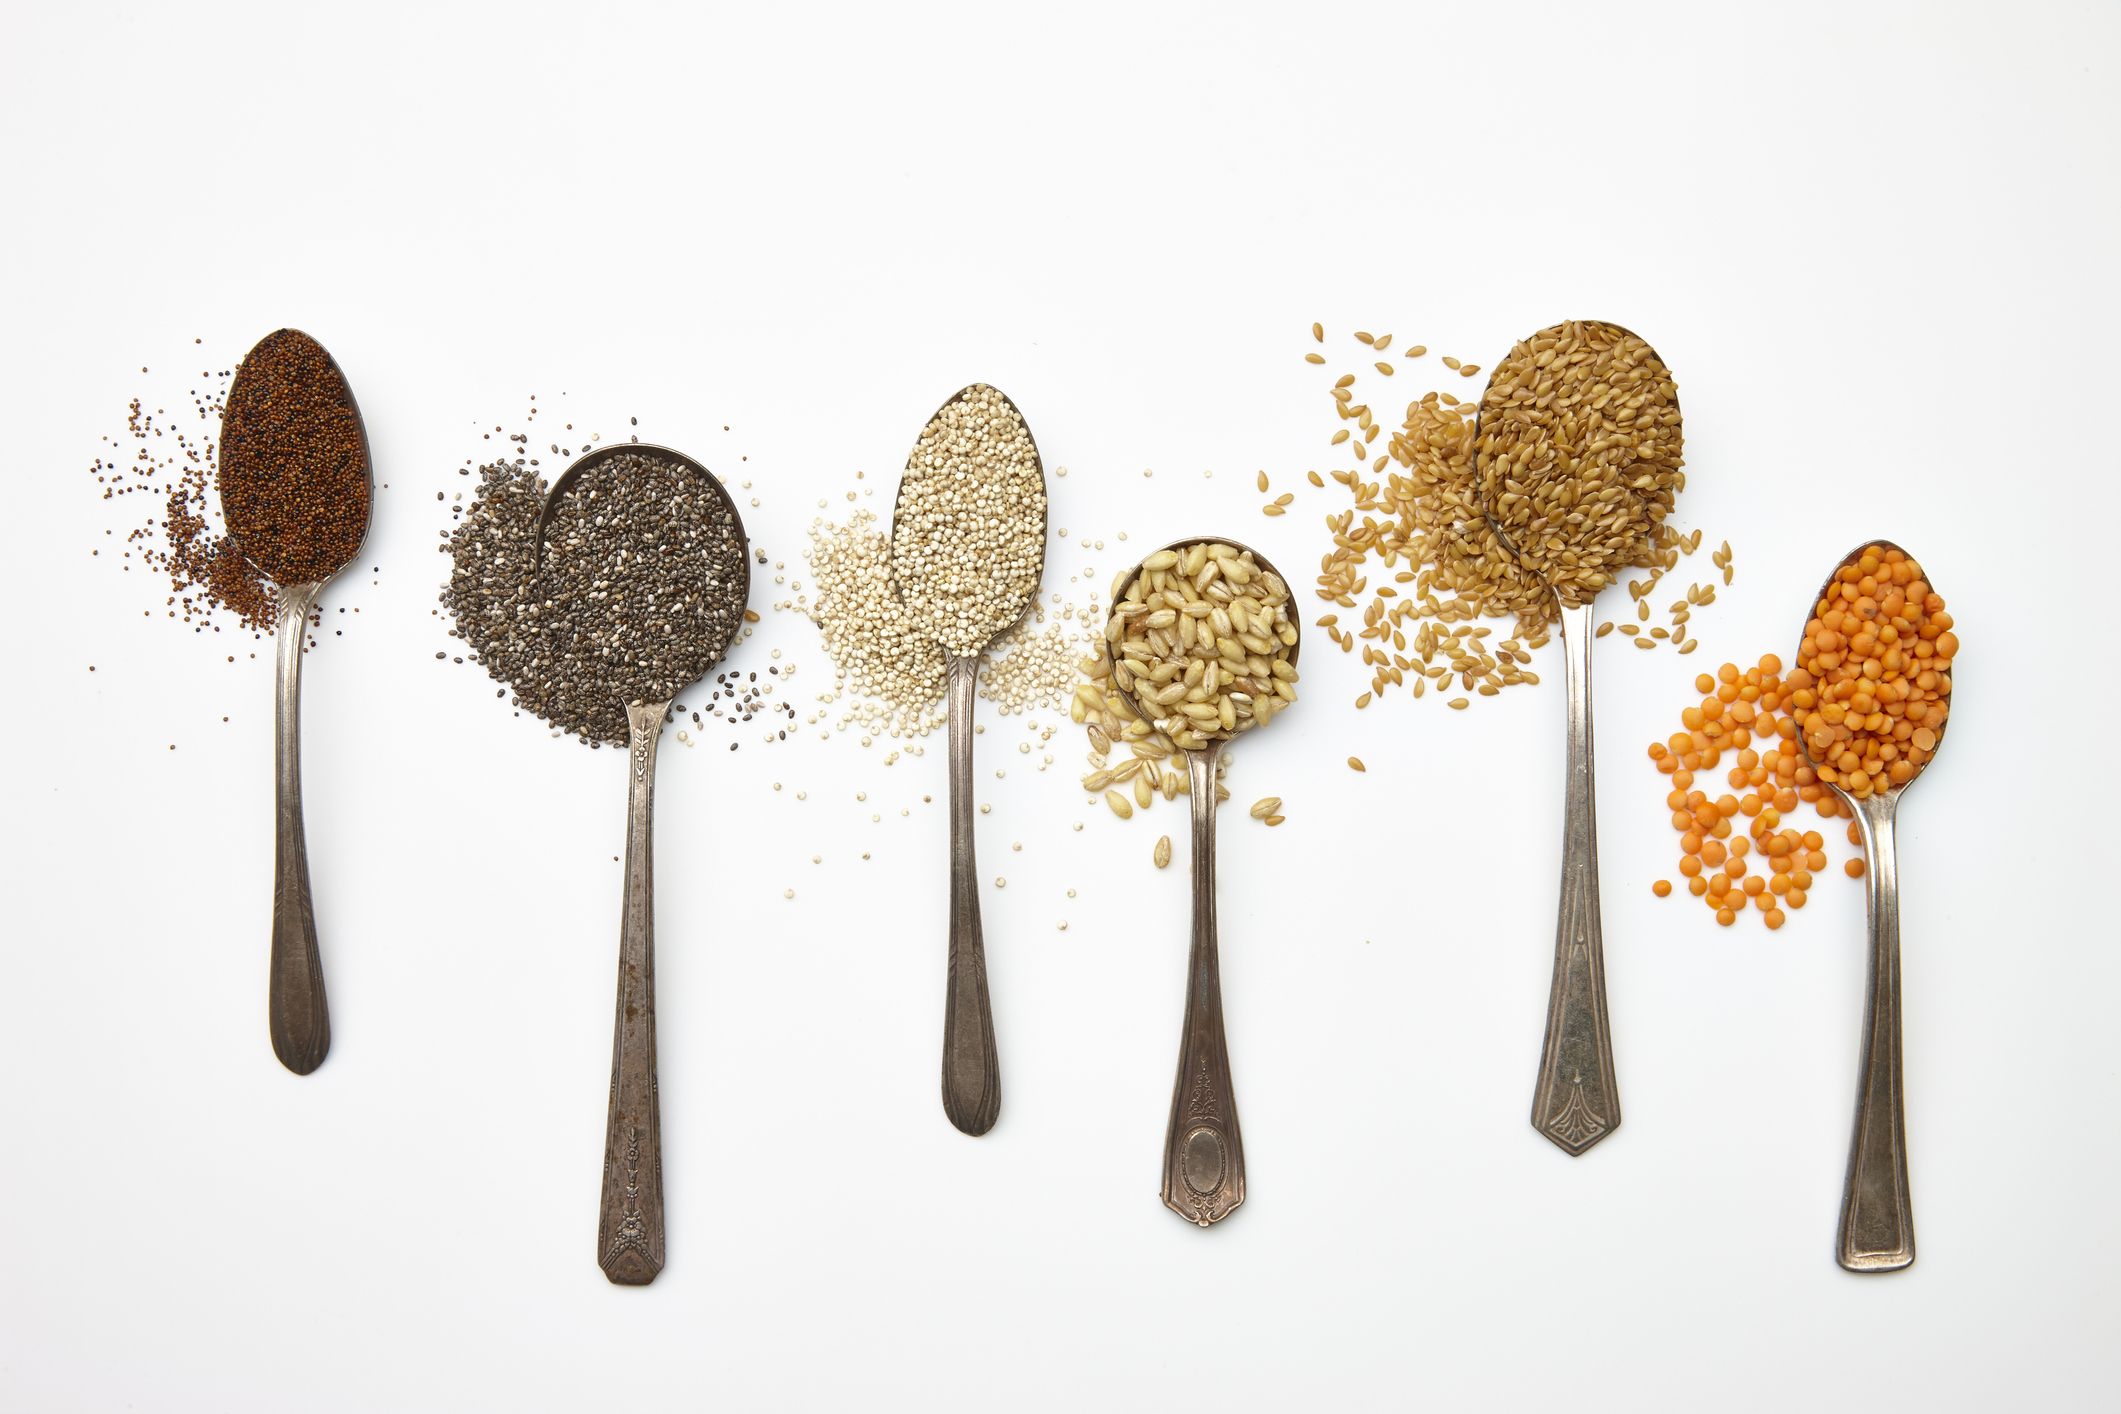 Farina di semi di lino: come si usa e perché fa bene